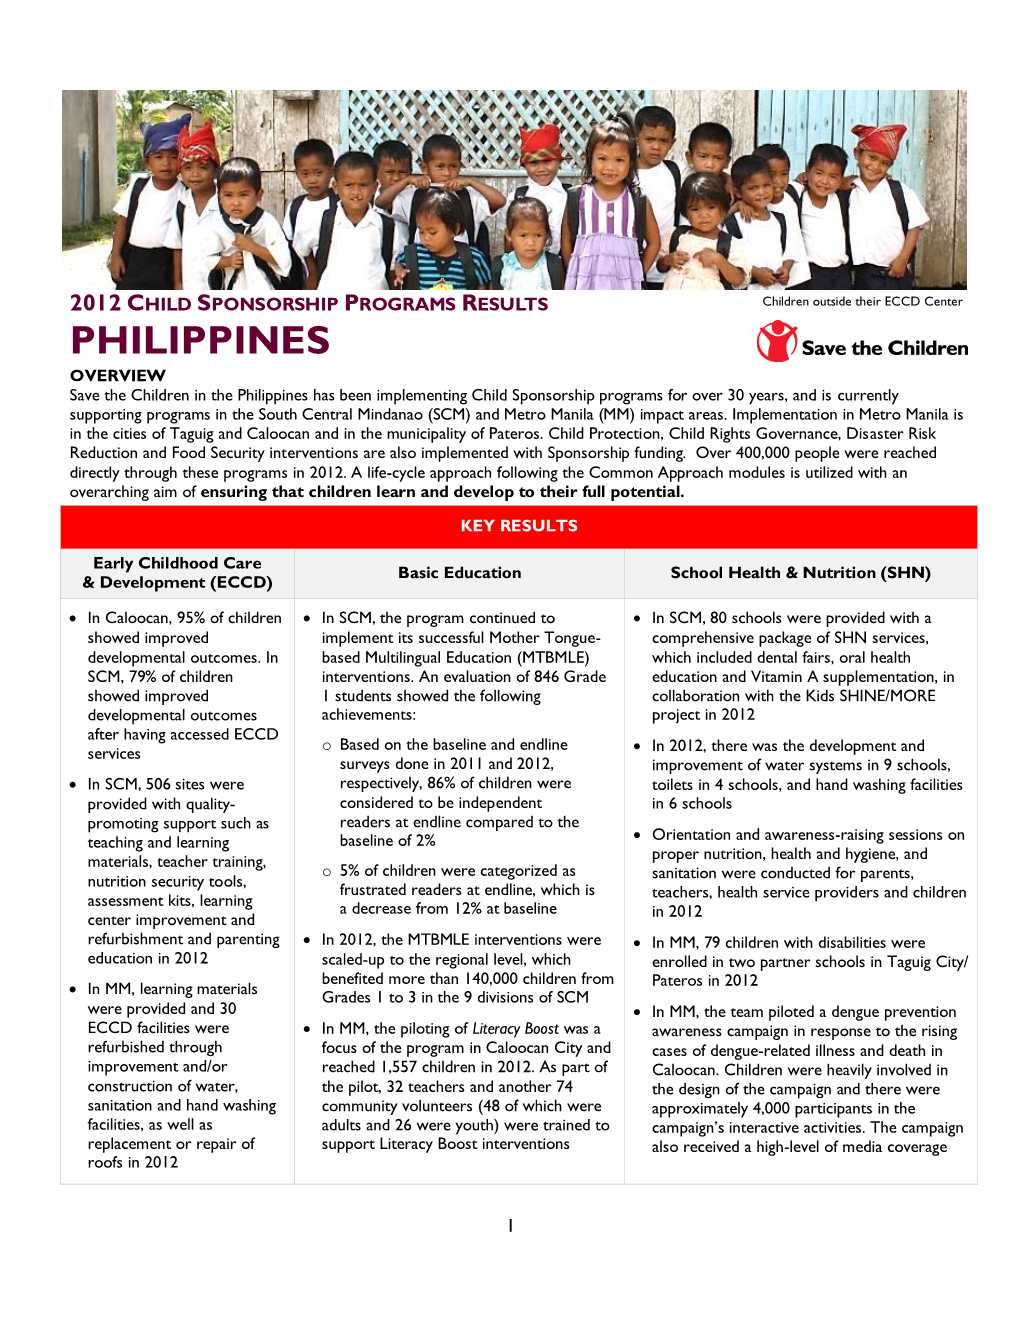 Achievements in Philippines 2012